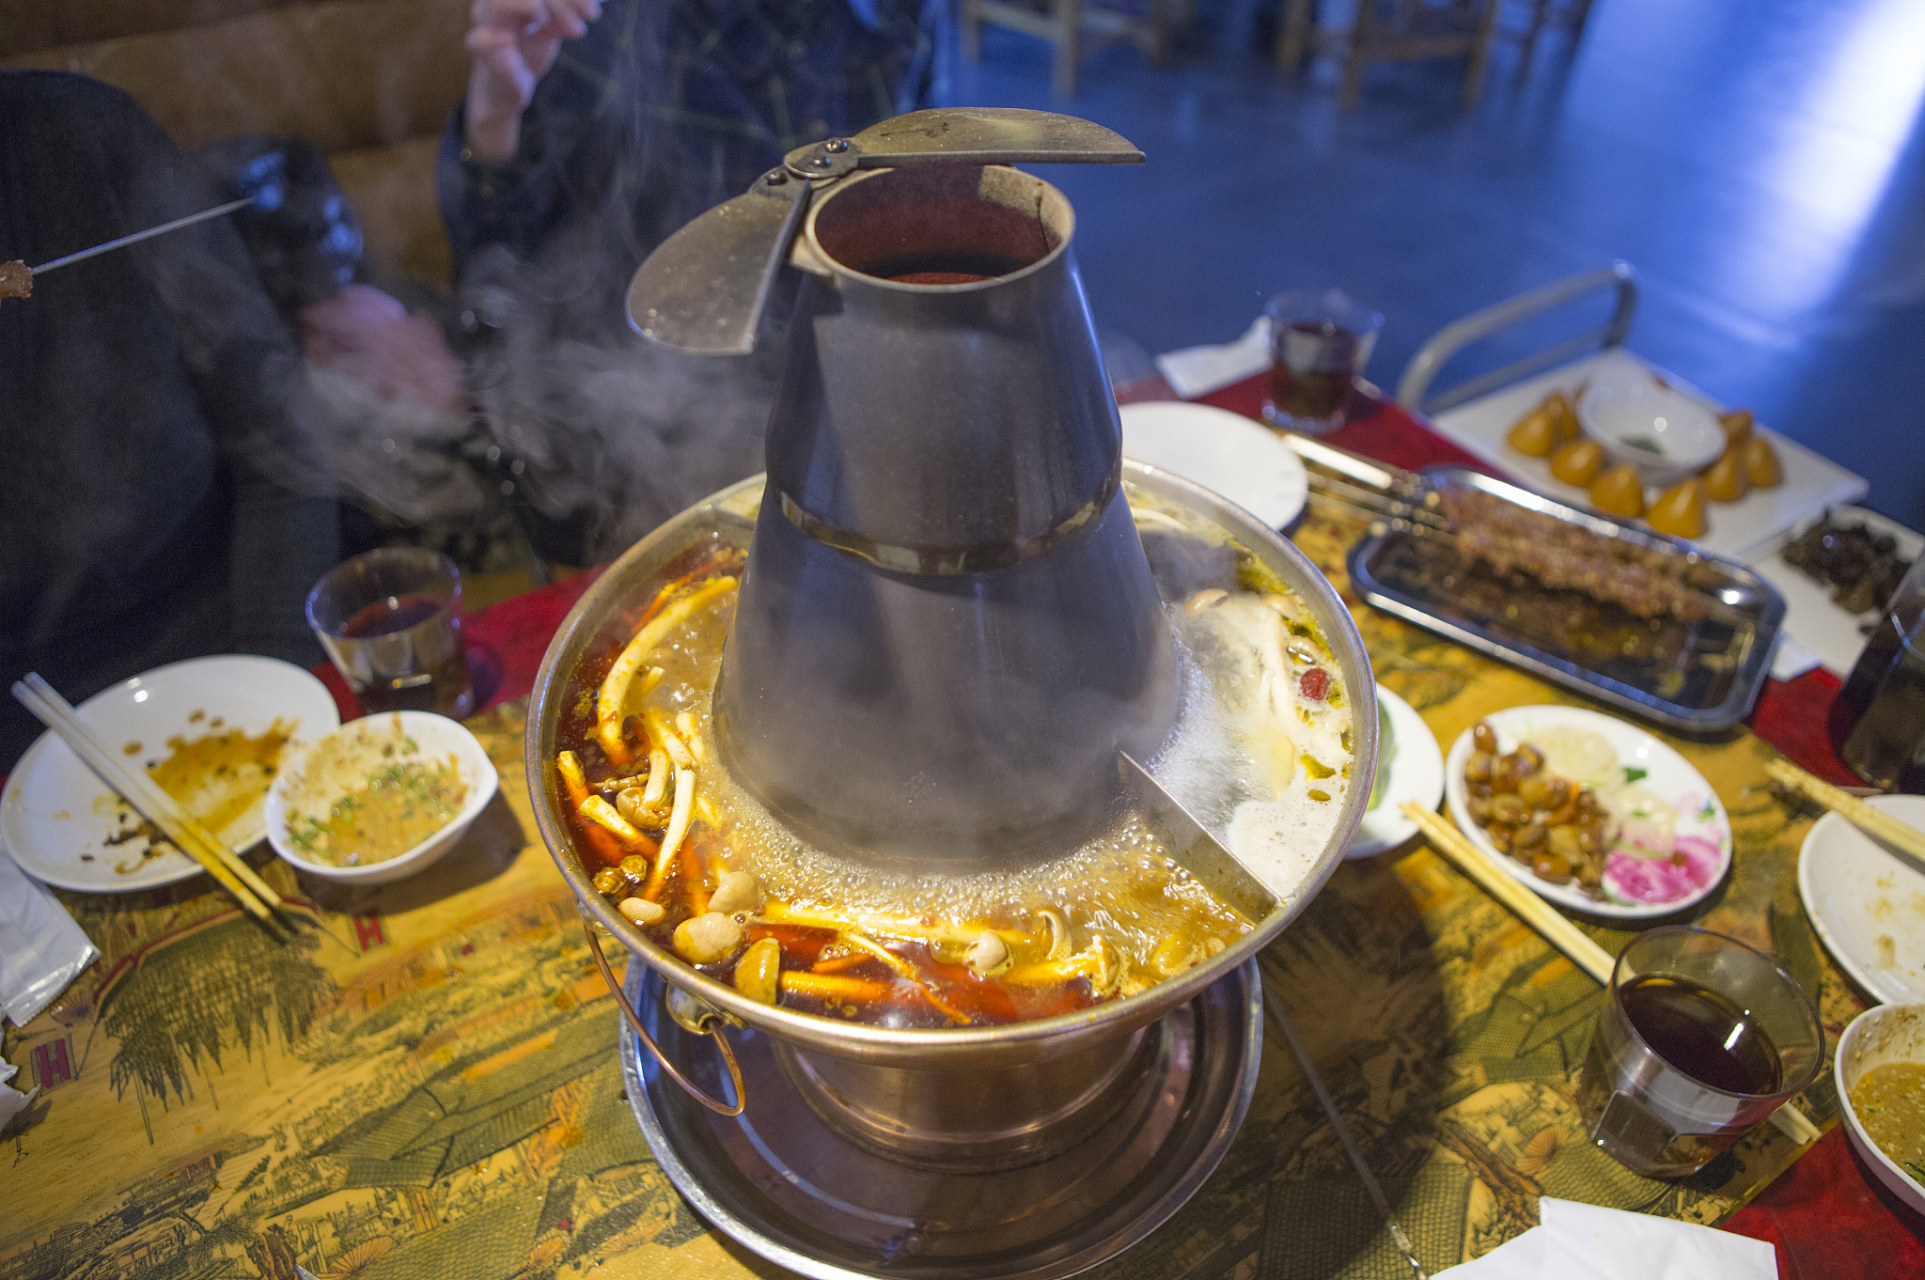 乌拉火锅是吉林的特色菜,吉林乌拉是满语音译,据《吉林通志》记载: